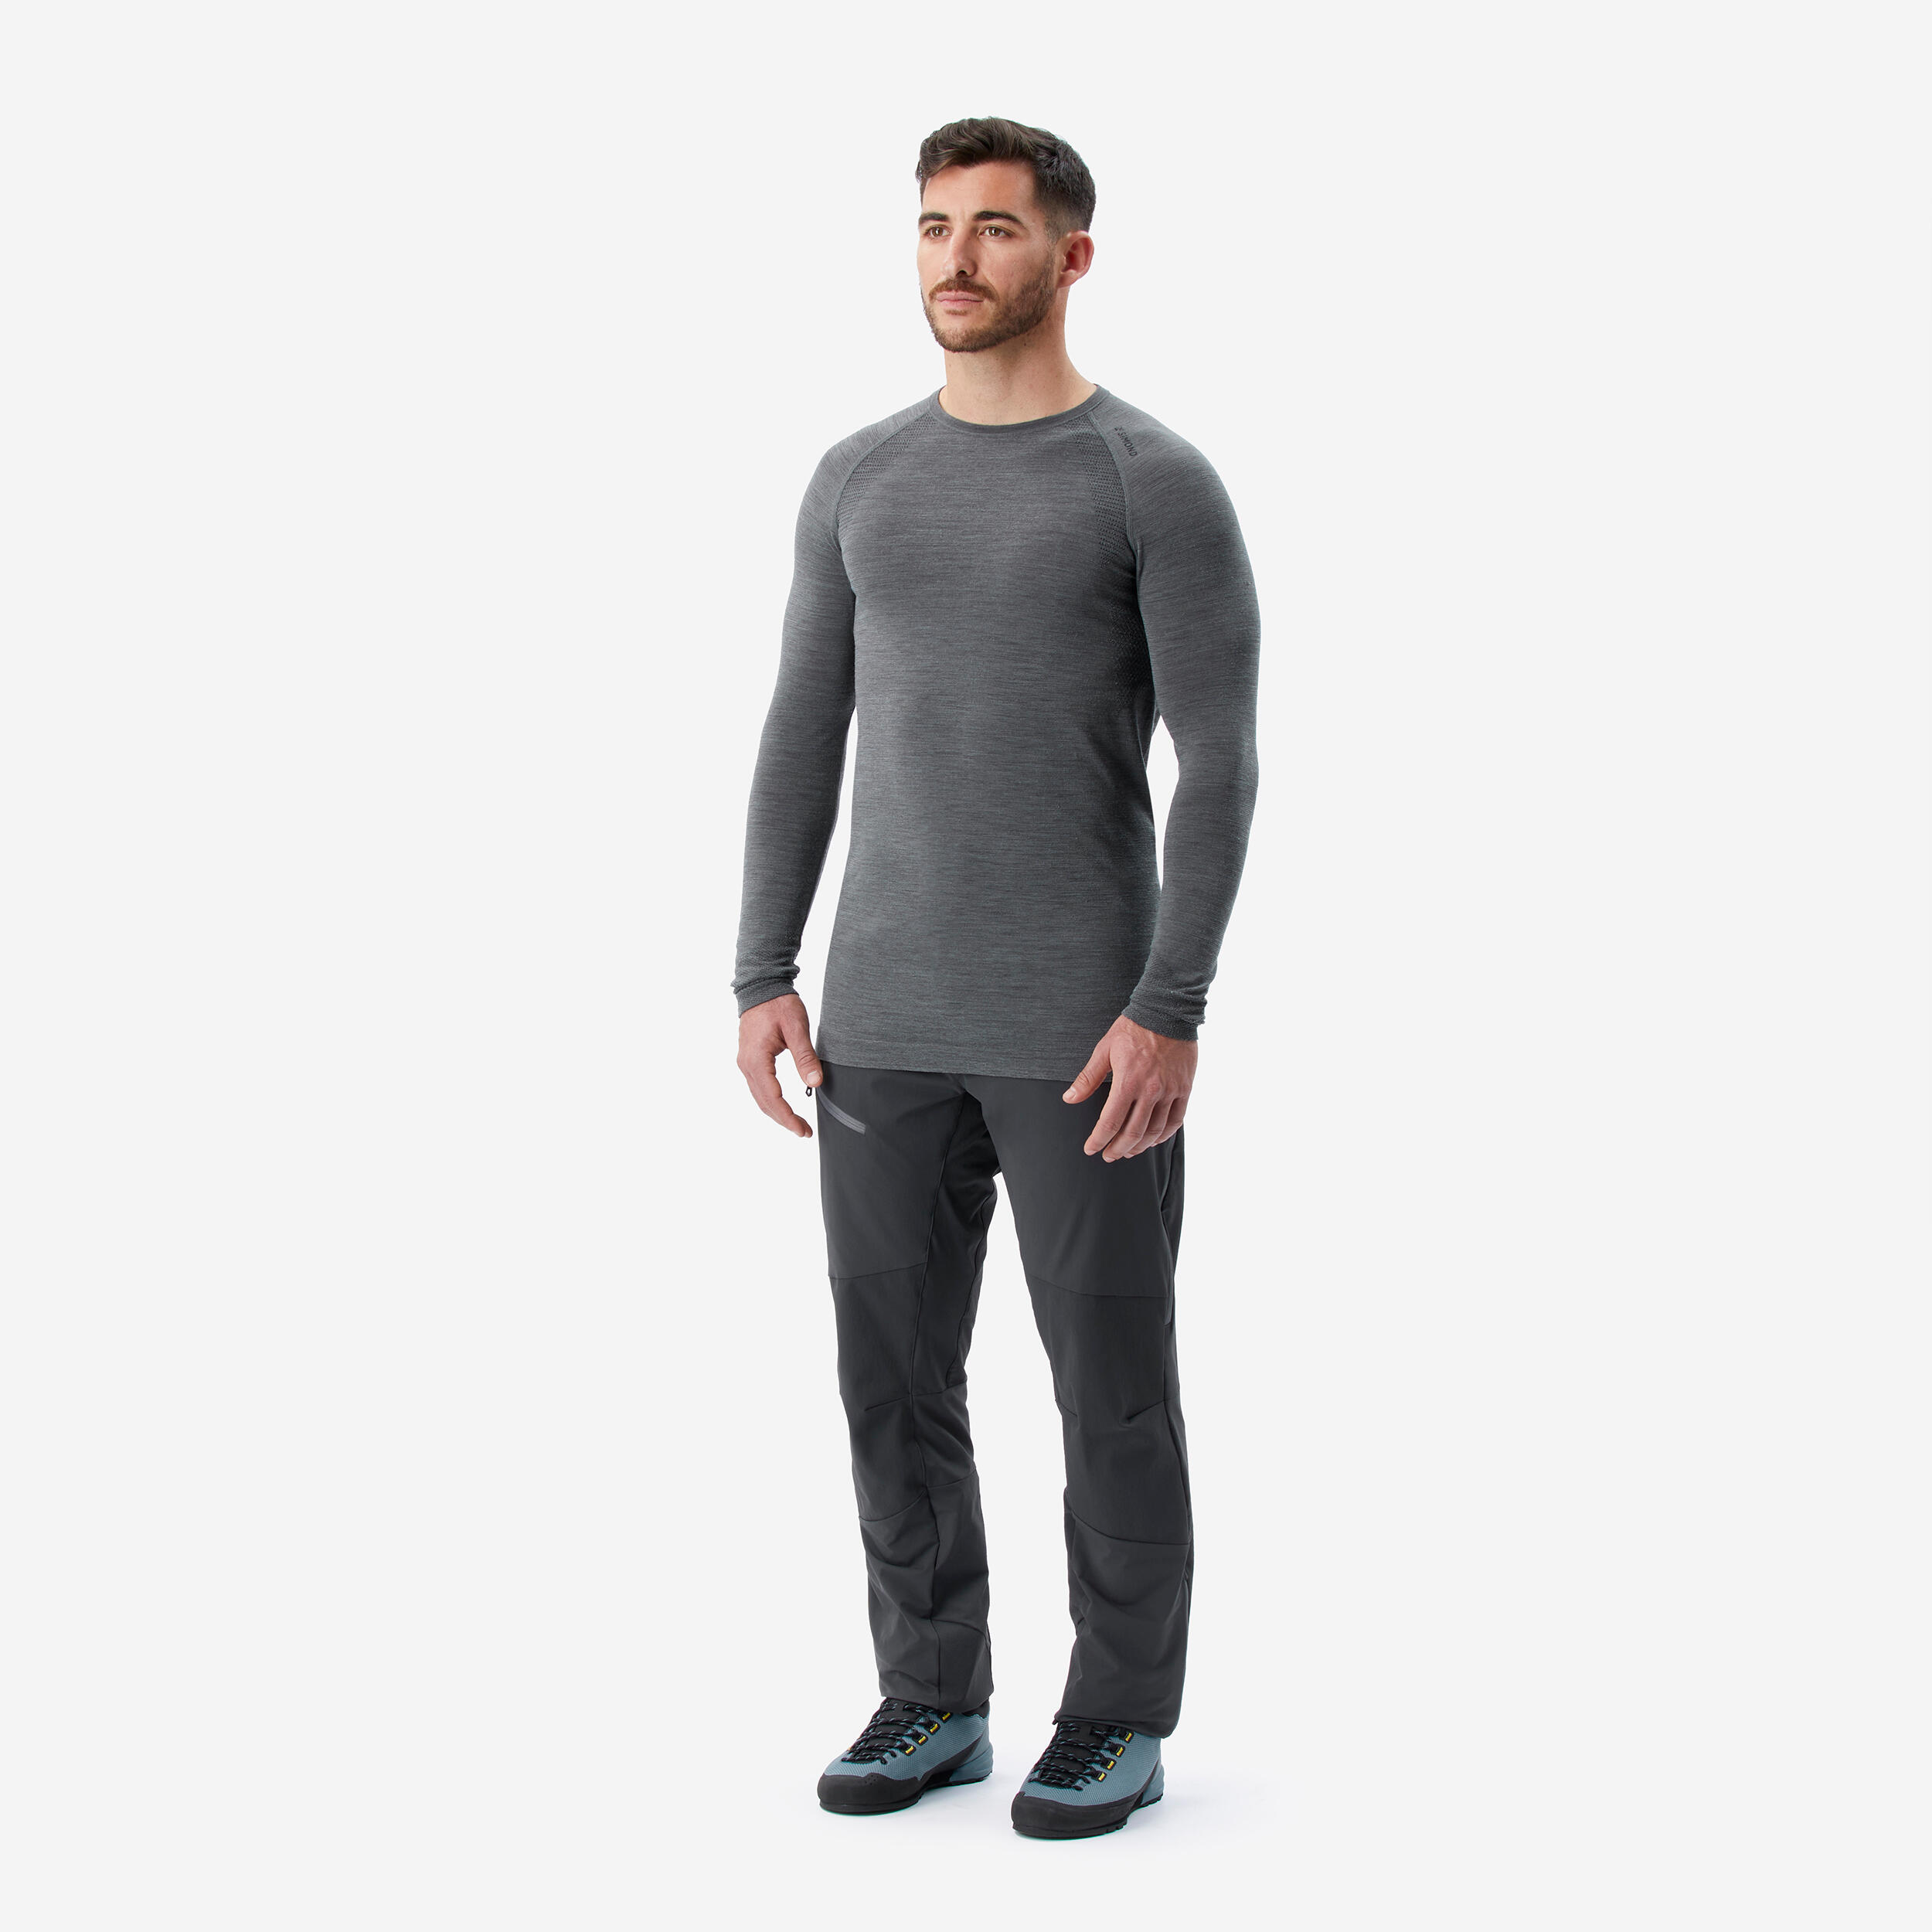 Men's Long-Sleeve Seamless Wool T-Shirt - ALPINISM 2/4